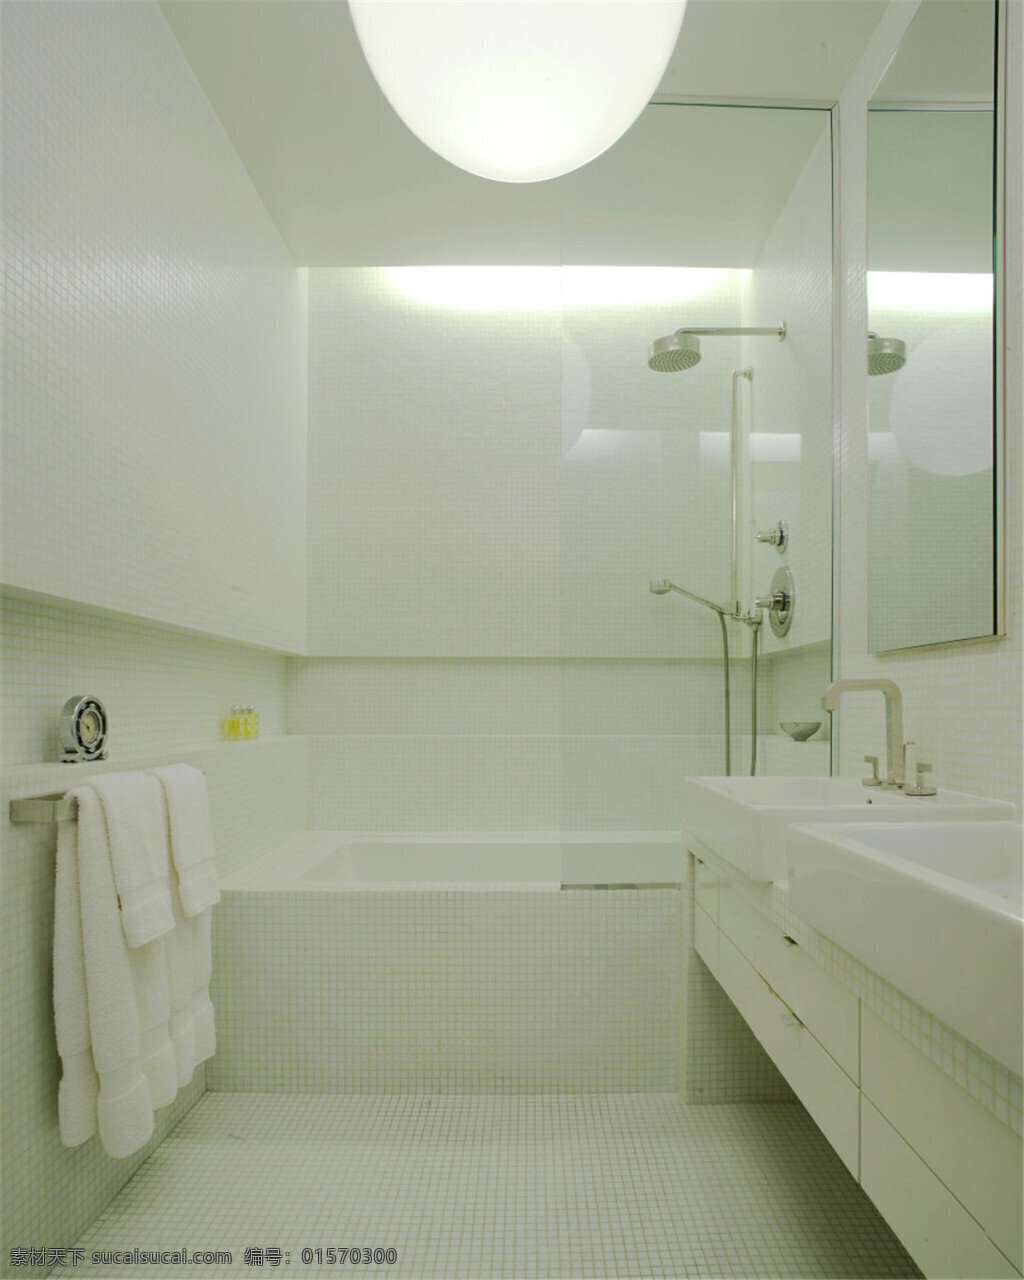 现代 简约 卫生间 球体 吊灯 室内装修 效果图 白色背景墙 白色地板 白色洗手台 卫生间装修